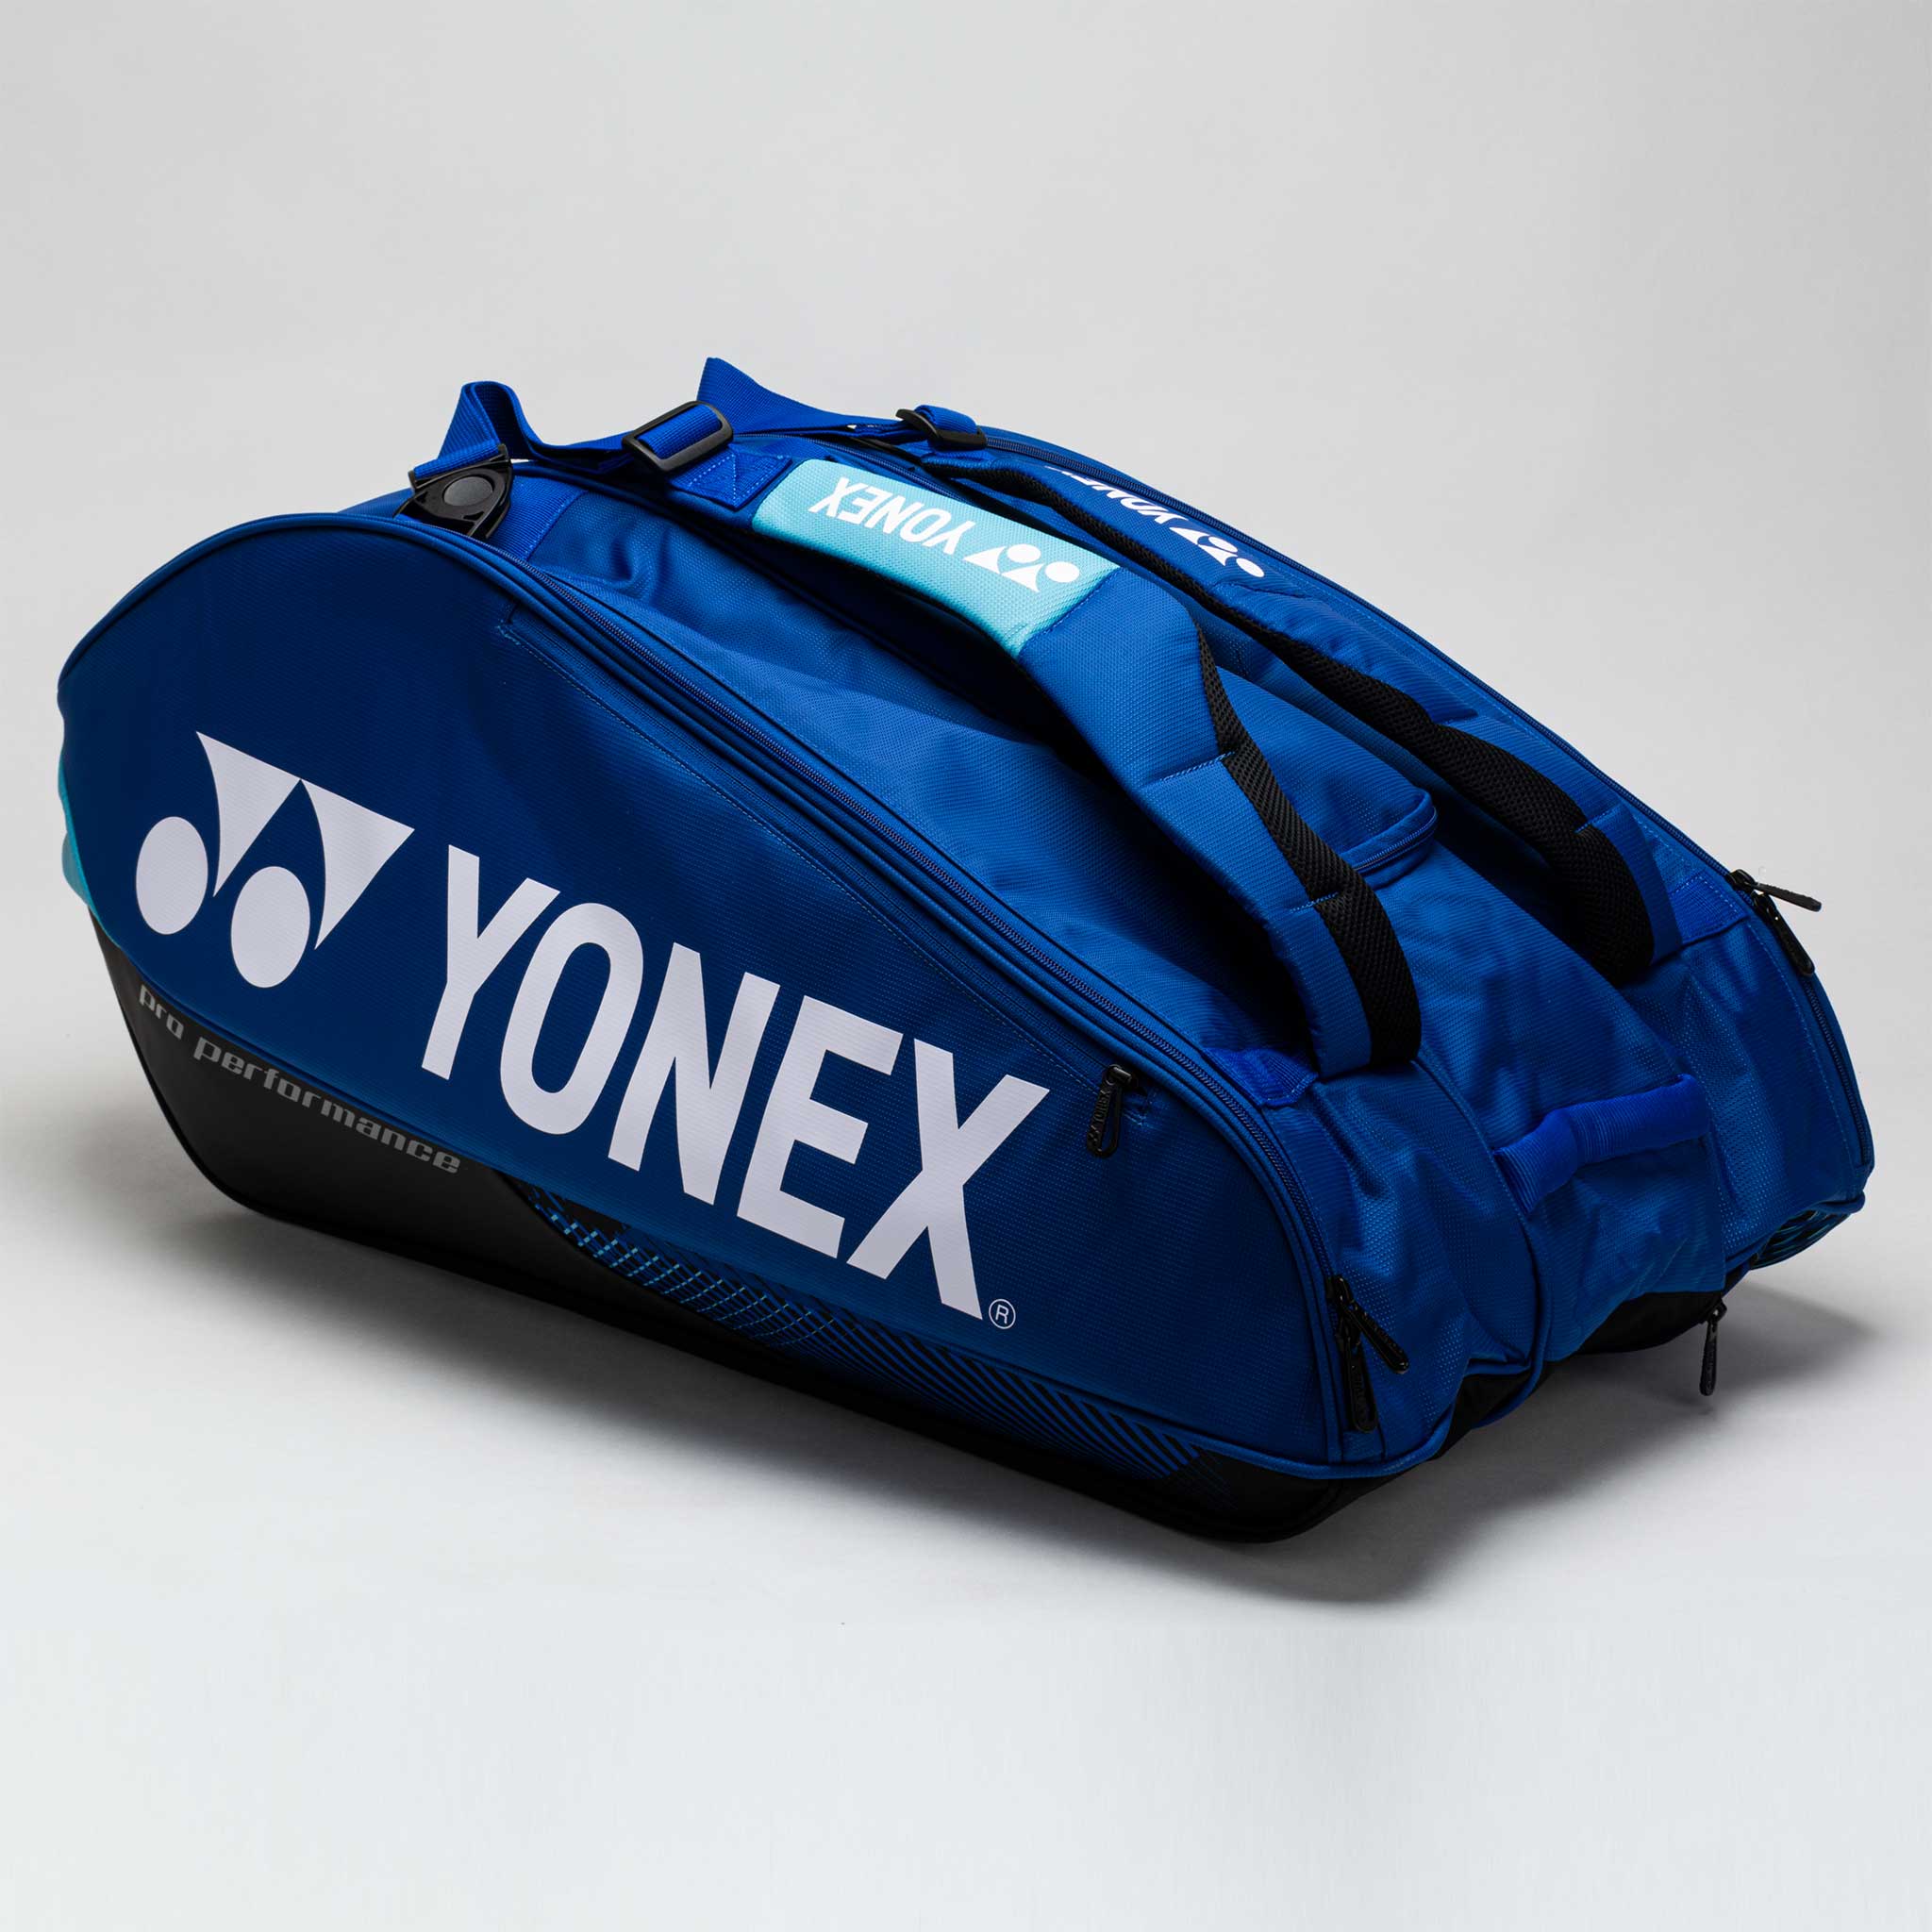 Yonex Pro 12 Pack Racquet Bag Colbalt Blue